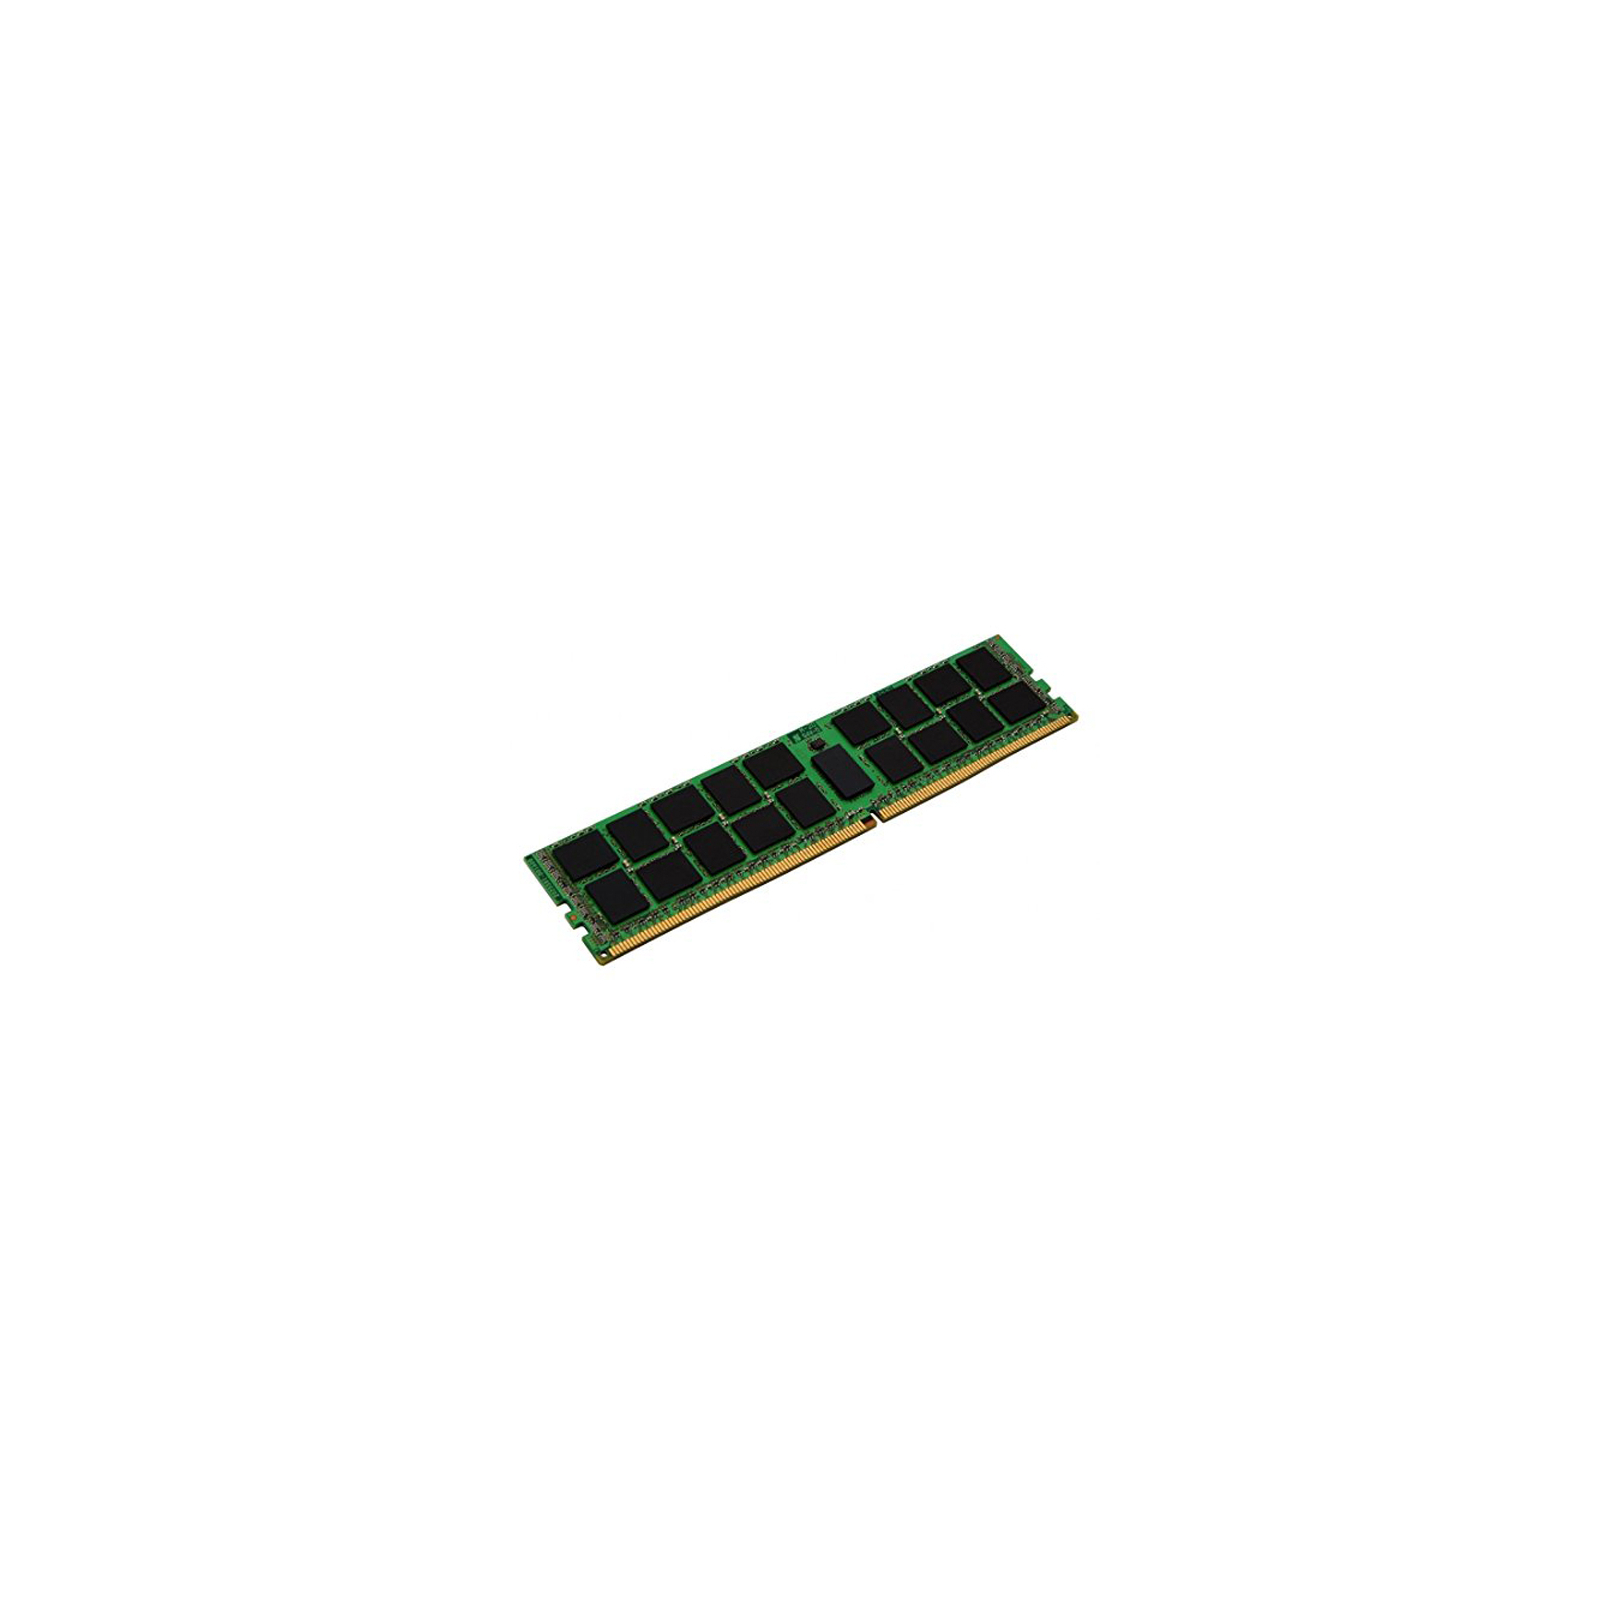 Модуль памяти для сервера DDR4 32GB ECC RDIMM 2400MHz 2Rx4 1.2V CL17 Kingston (KVR24R17D4/32)